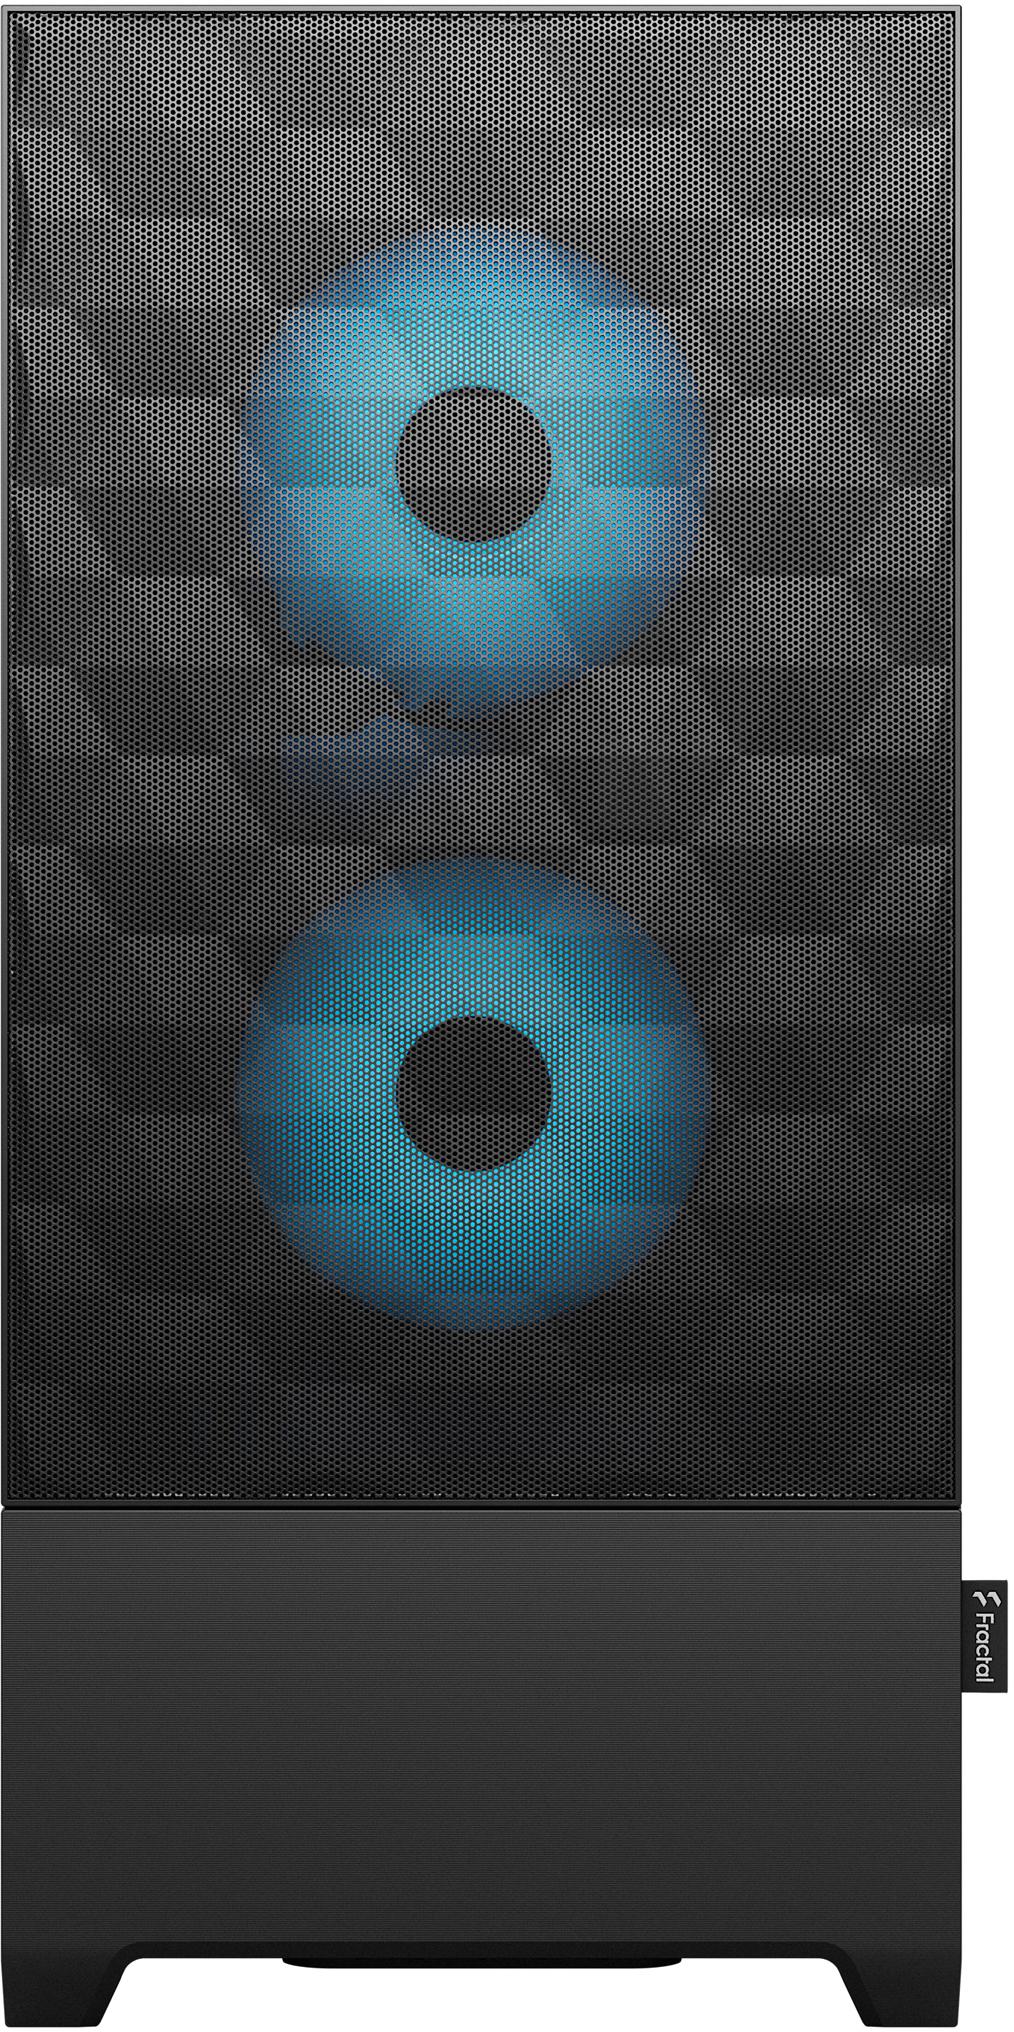 Fractal Design - Caixa ATX Fractal Design Pop Air RGB Cyan Core TG Clear Tint